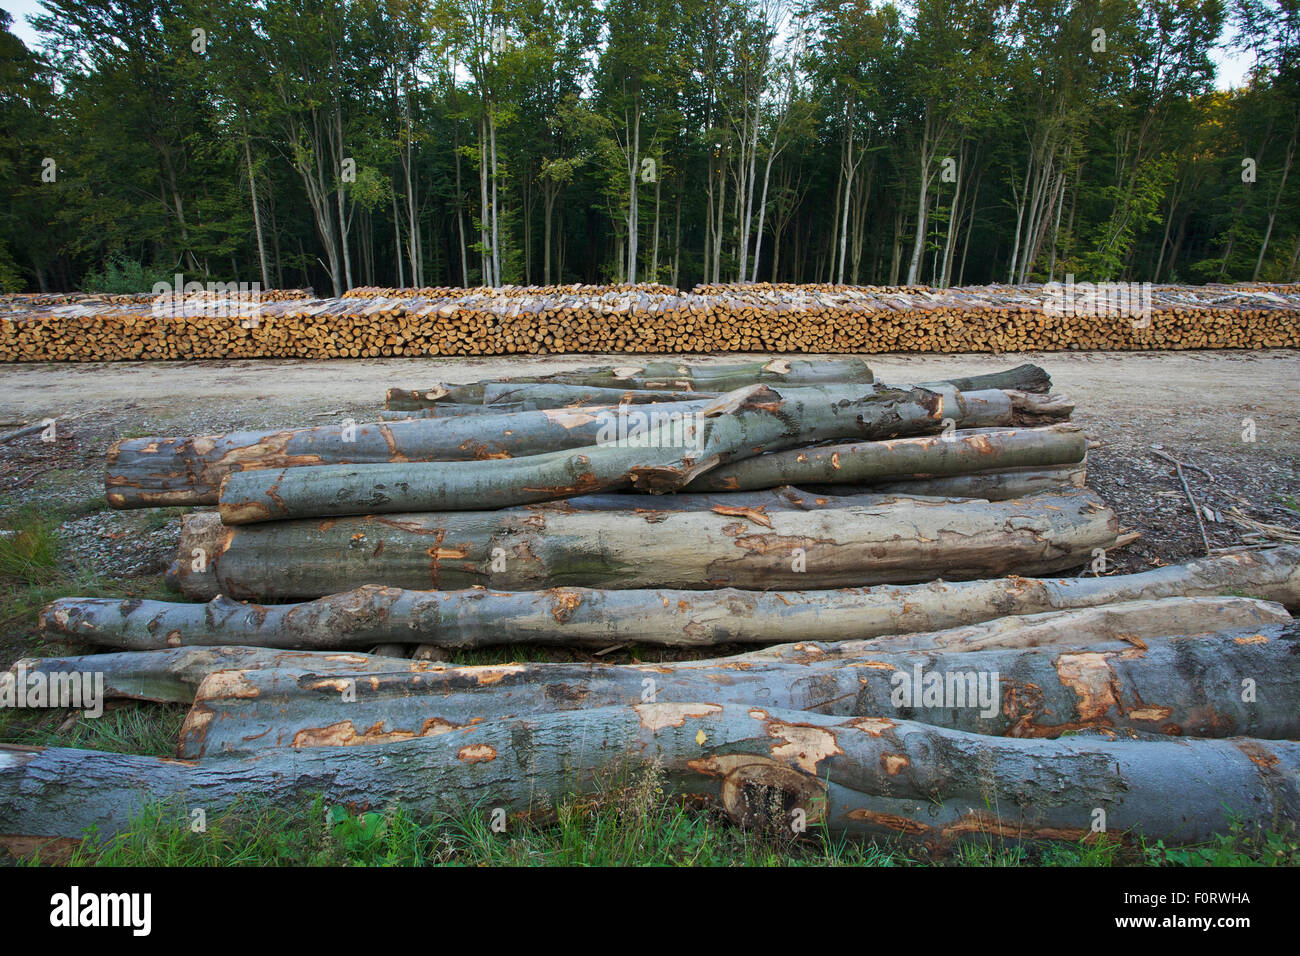 Des grumes coupées du Scot pin (Pinus silvestris), bouleau (Betula sp) et Common / hêtre européen (Fagus sylvatica) à un parc à bois des forêts de l'état, près de la frontière Polish-Slovakian, Pologne, septembre 2011 Banque D'Images